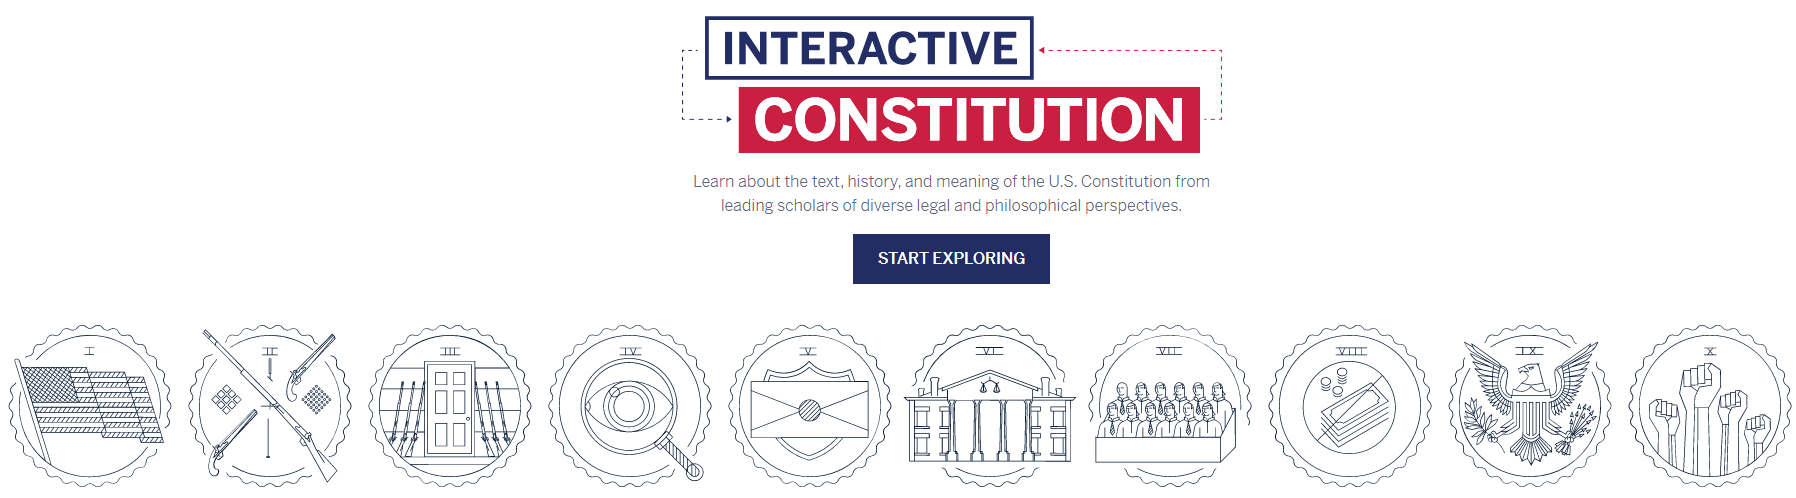 Interactive Constitution - constitutioncenter.org Website